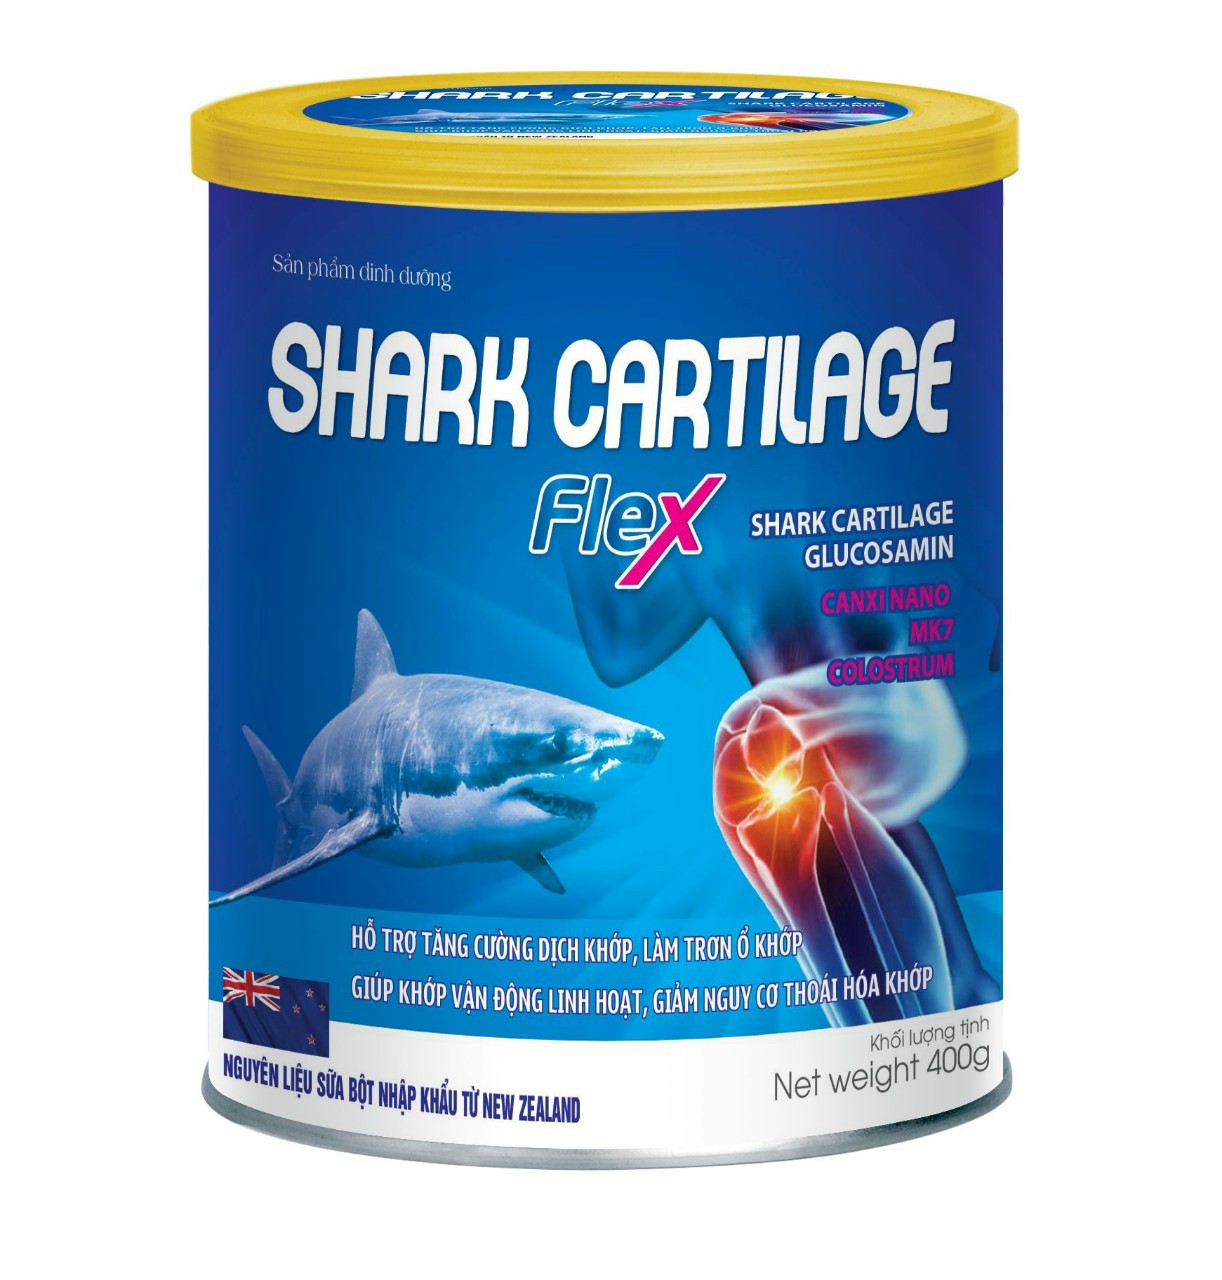 Sữa bột xương khớp shark cartilage flex với thành phần sụn vi cá mập, glucosamine, canxi nano mk7 hỗ trợ tăng cường dịch khớp, làm trơn ổ khớp, giúp khớp vận động linh hoạt, giảm nguy cơ thoái hóa khớp 1